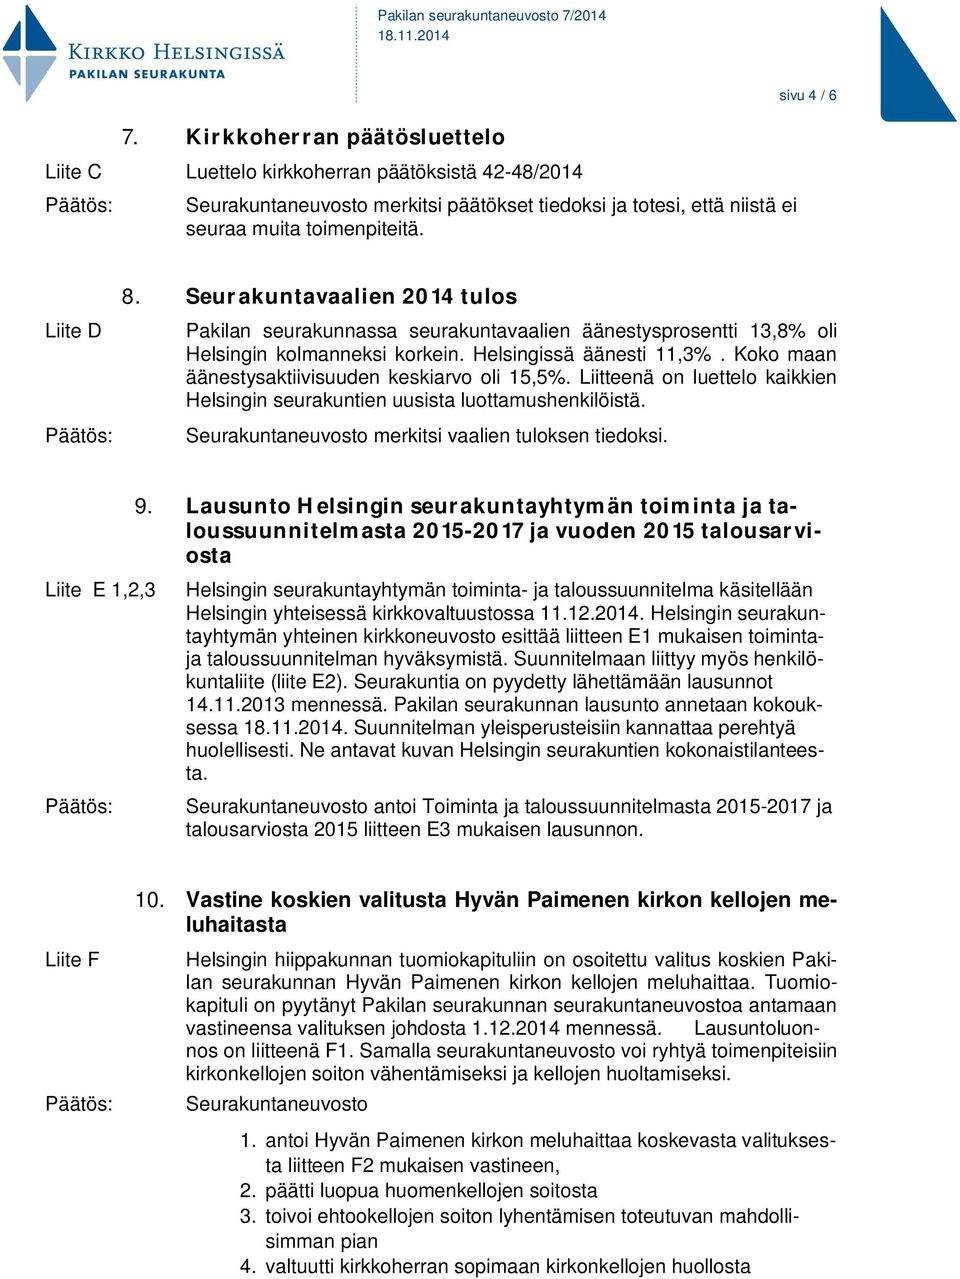 Koko maan äänestysaktiivisuuden keskiarvo oli 15,5%. Liitteenä on luettelo kaikkien Helsingin seurakuntien uusista luottamushenkilöistä. Seurakuntaneuvosto merkitsi vaalien tuloksen tiedoksi.